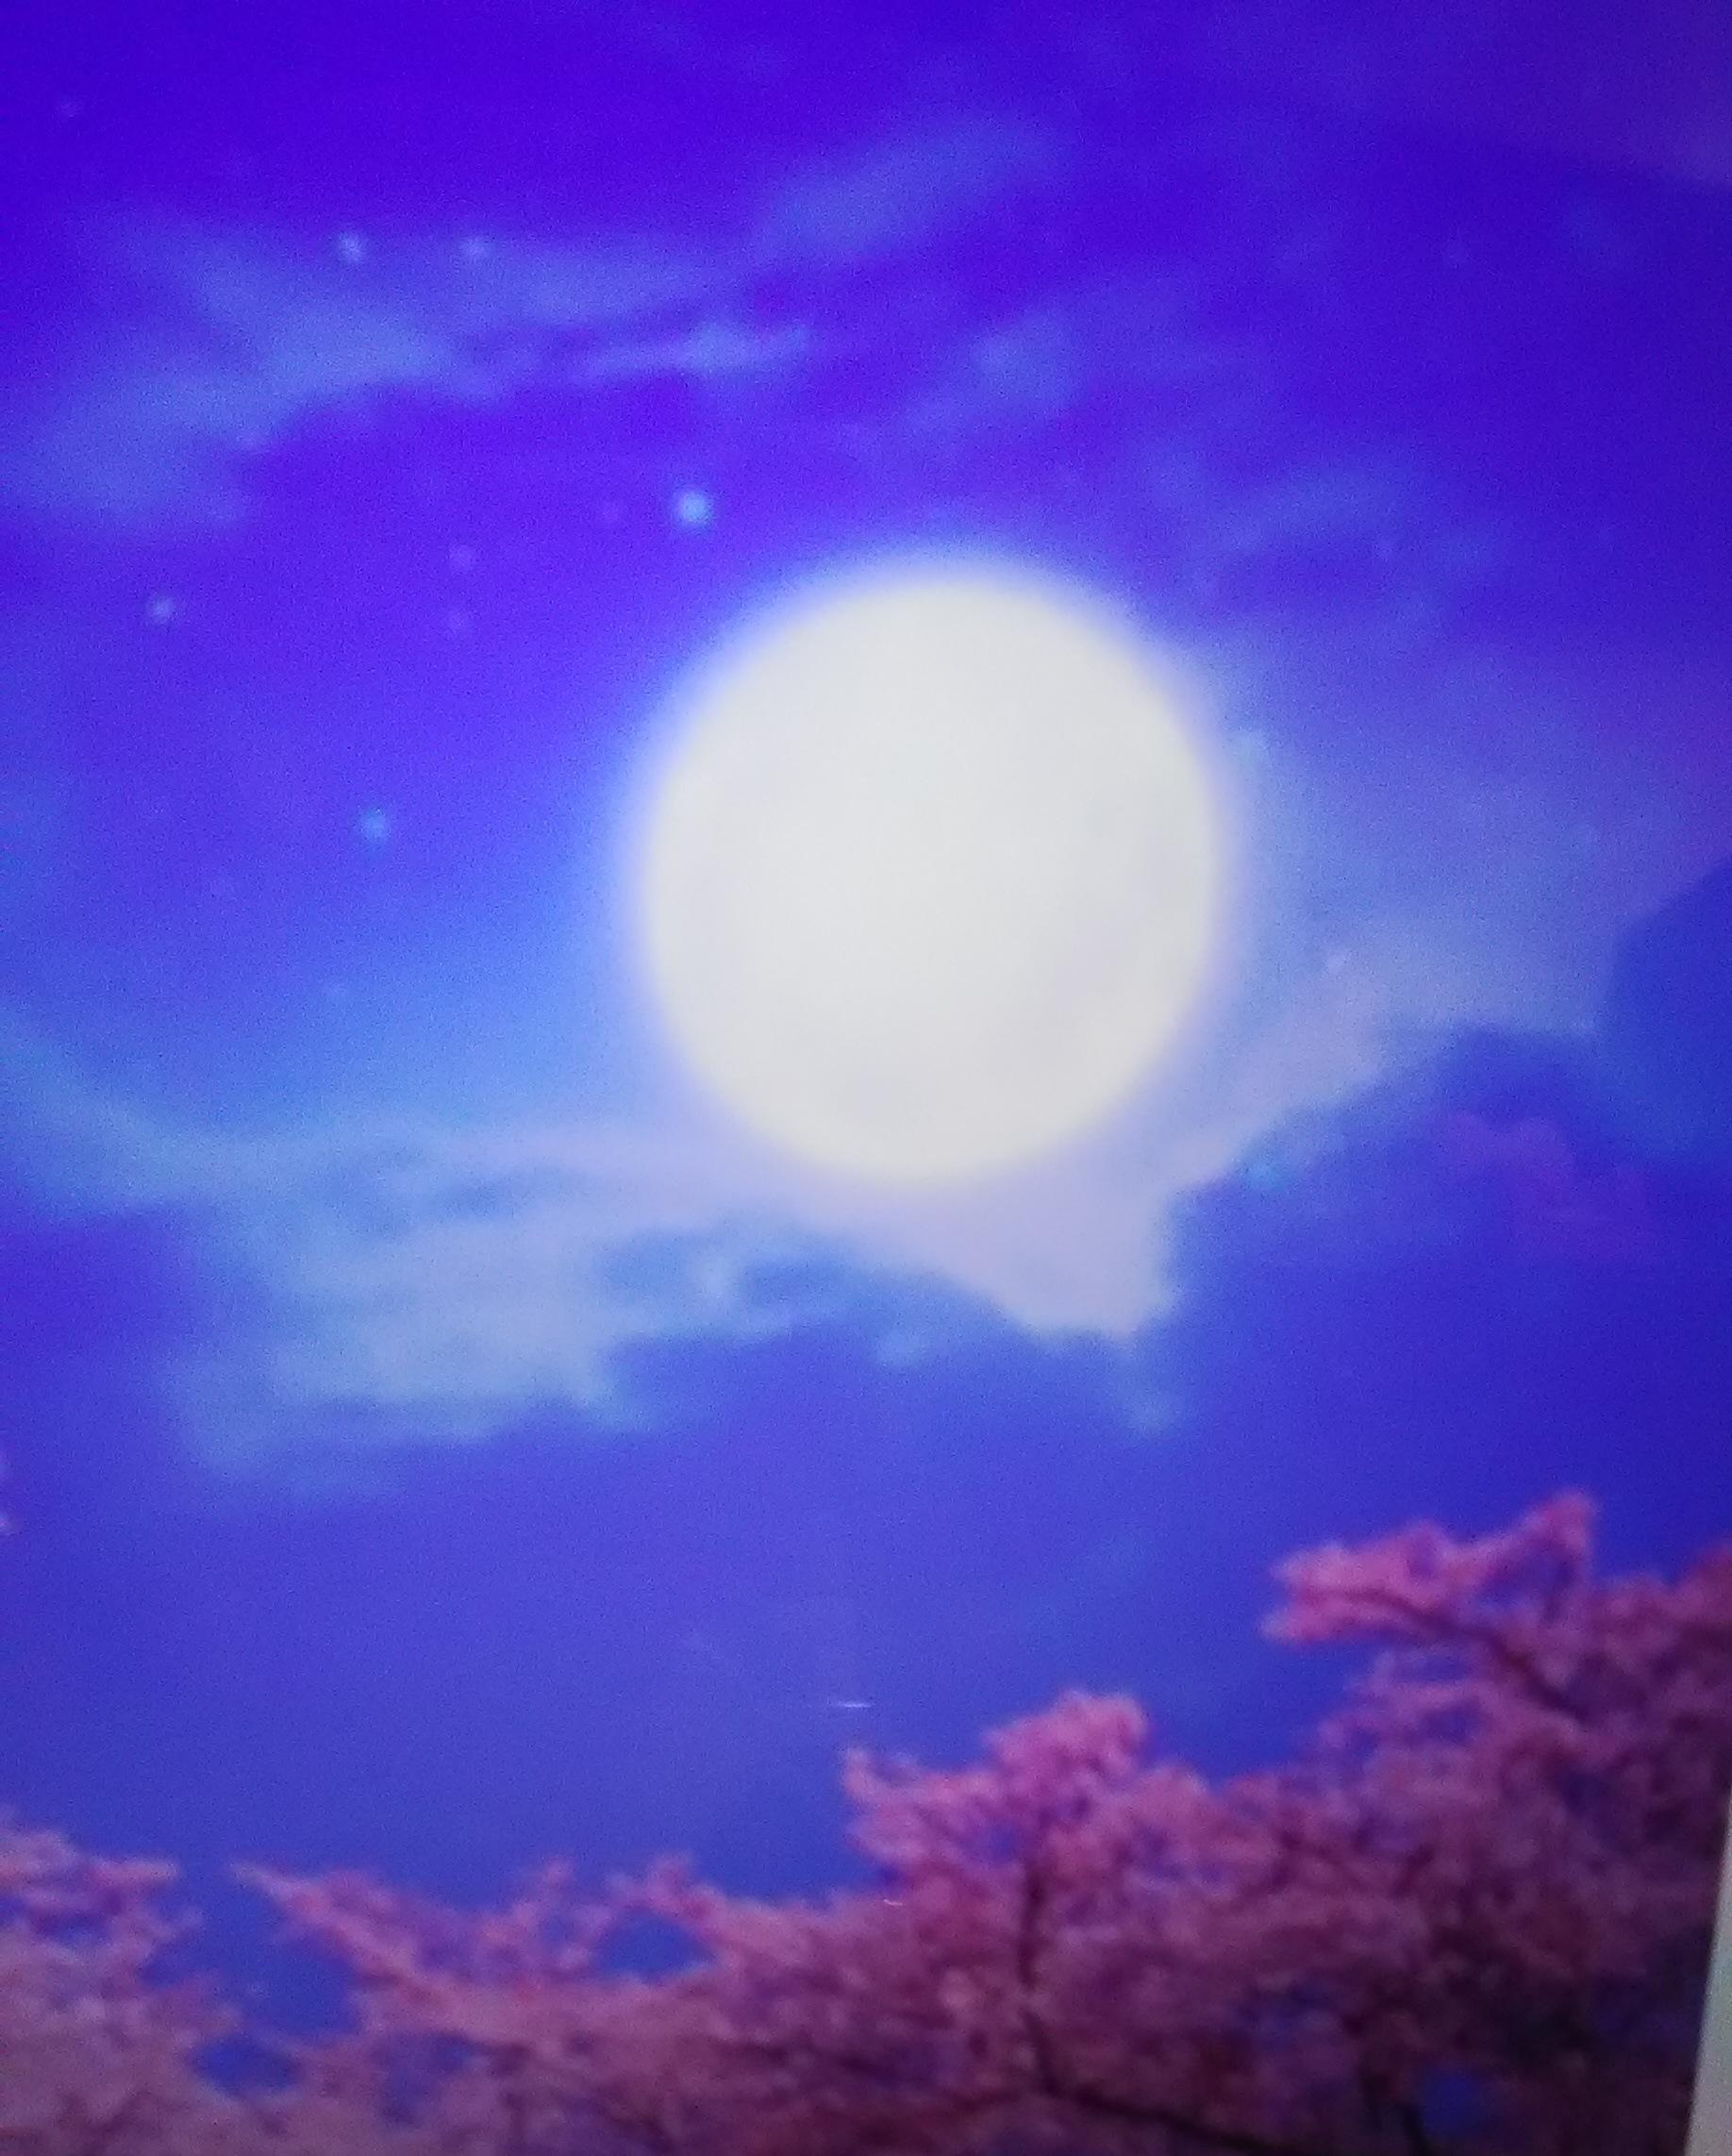 天秤座の満月は優雅でおしゃれに 泉里 ミサト 先生 電話占いカリス 口コミで当たると話題の電話占い